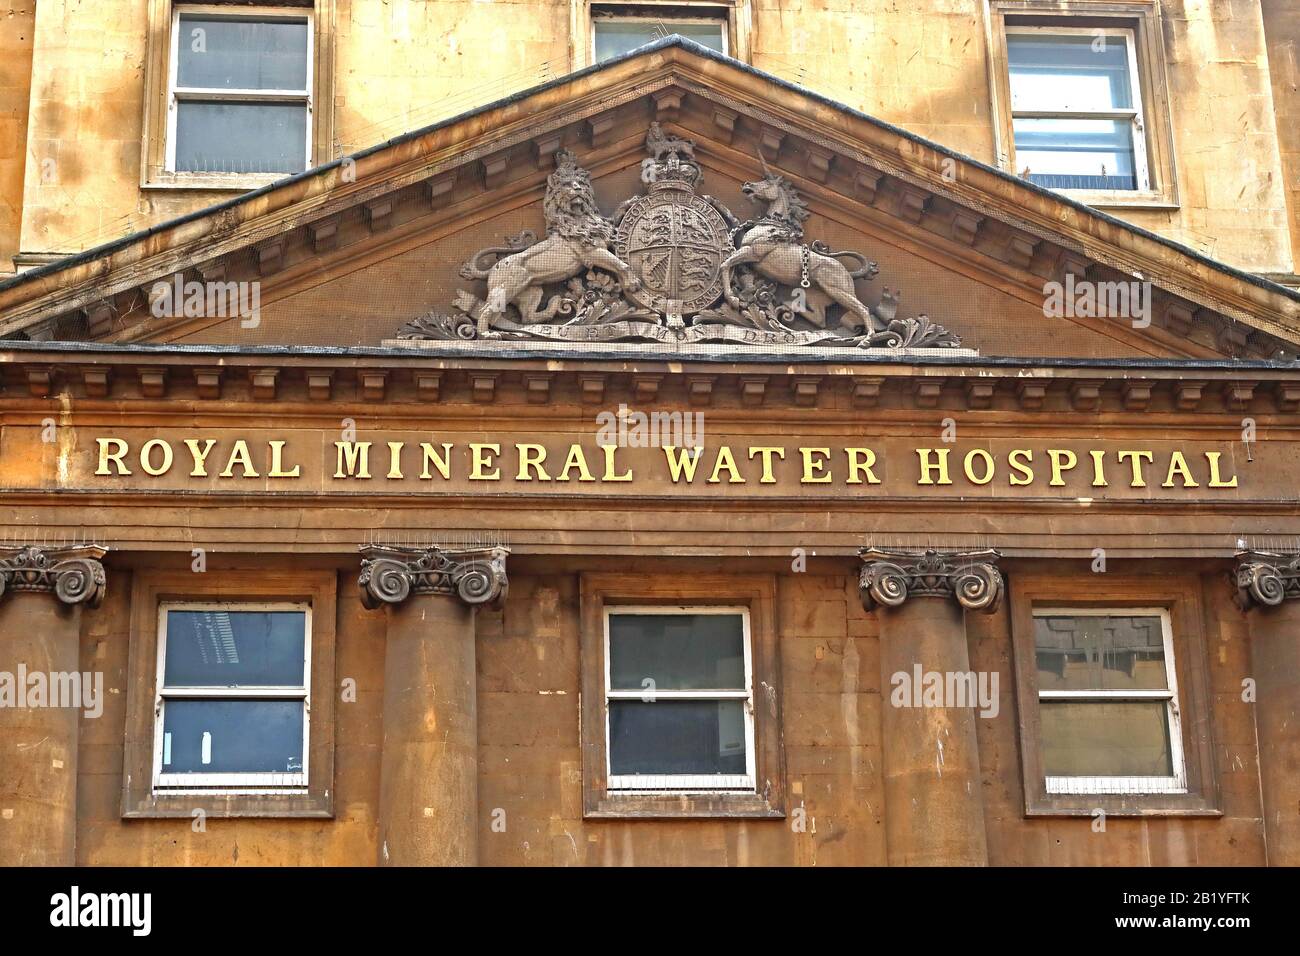 Royal Mineral Water Hospital, ospedale originariamente per i poveri, conosciuto localmente come 'il min', Gascoyne House Upper Borough Walls, Bath, Somerset, BA1 Foto Stock